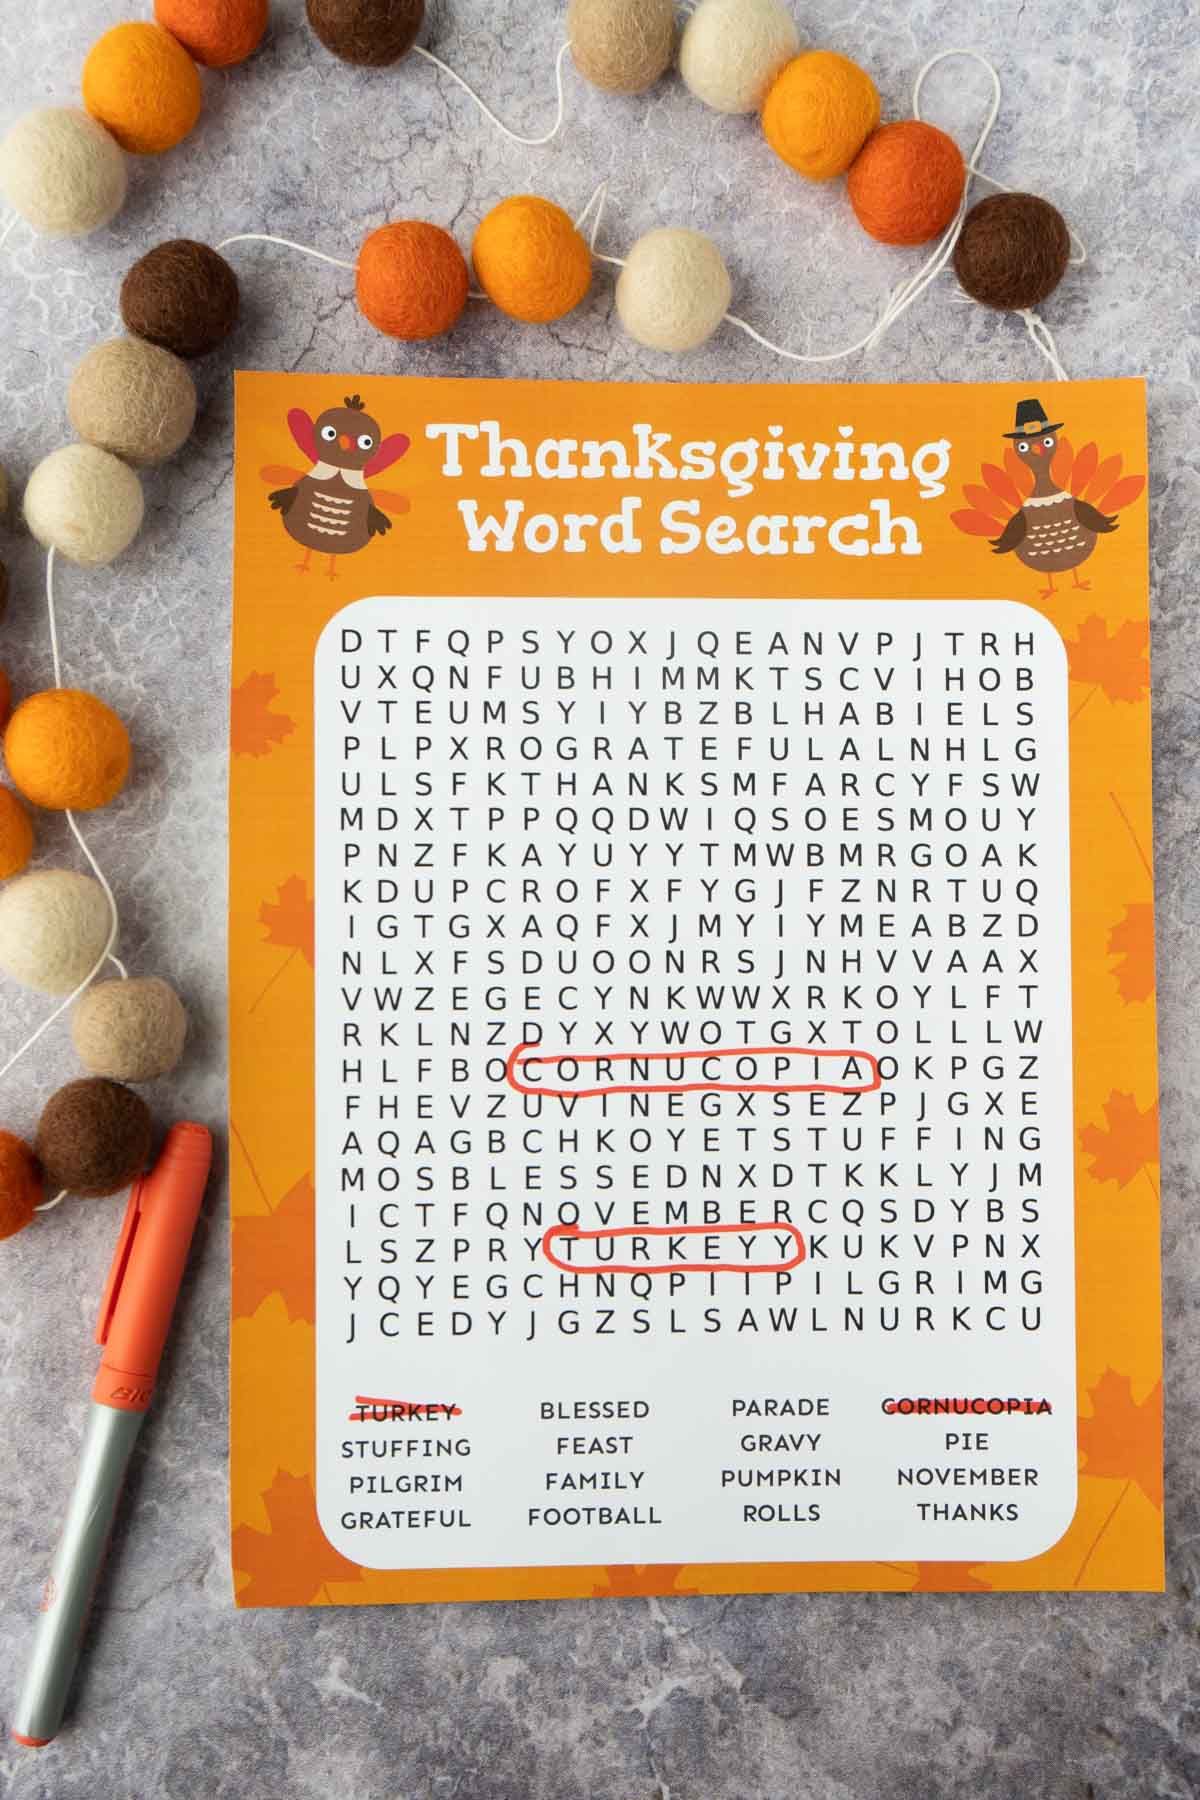 Wyszukiwanie słów na Święto Dziękczynienia z dwoma zakreślonymi słowami